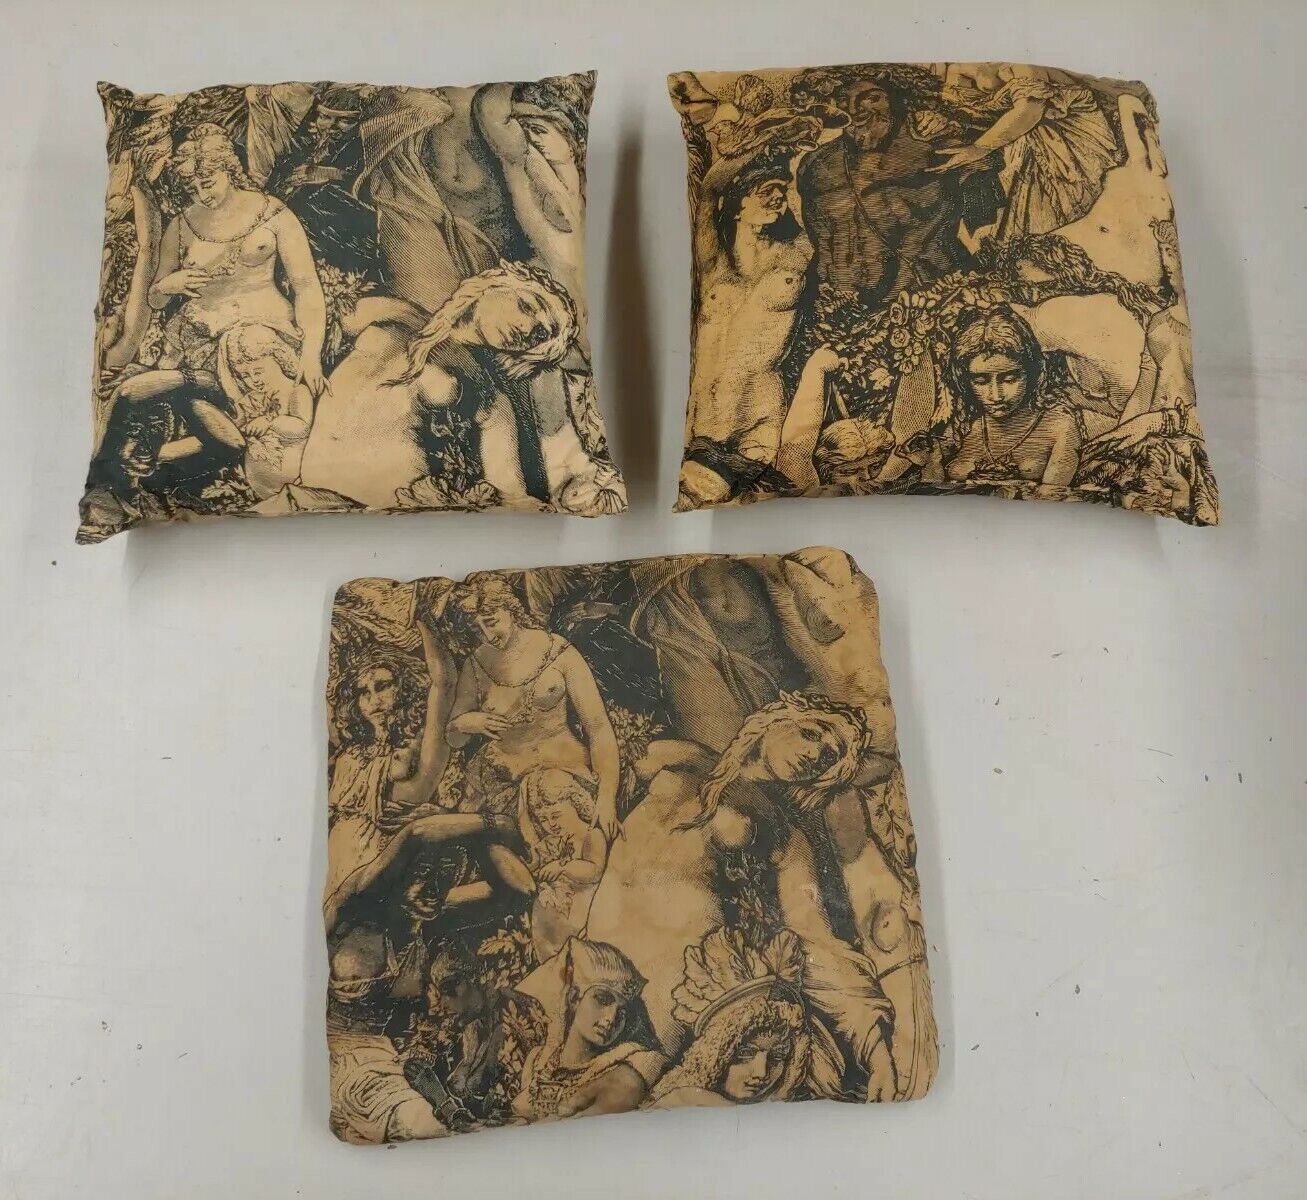 3x Antique Vintage Pillows Graphic Nude Woman Orgy Roman Greek Renaissance Art